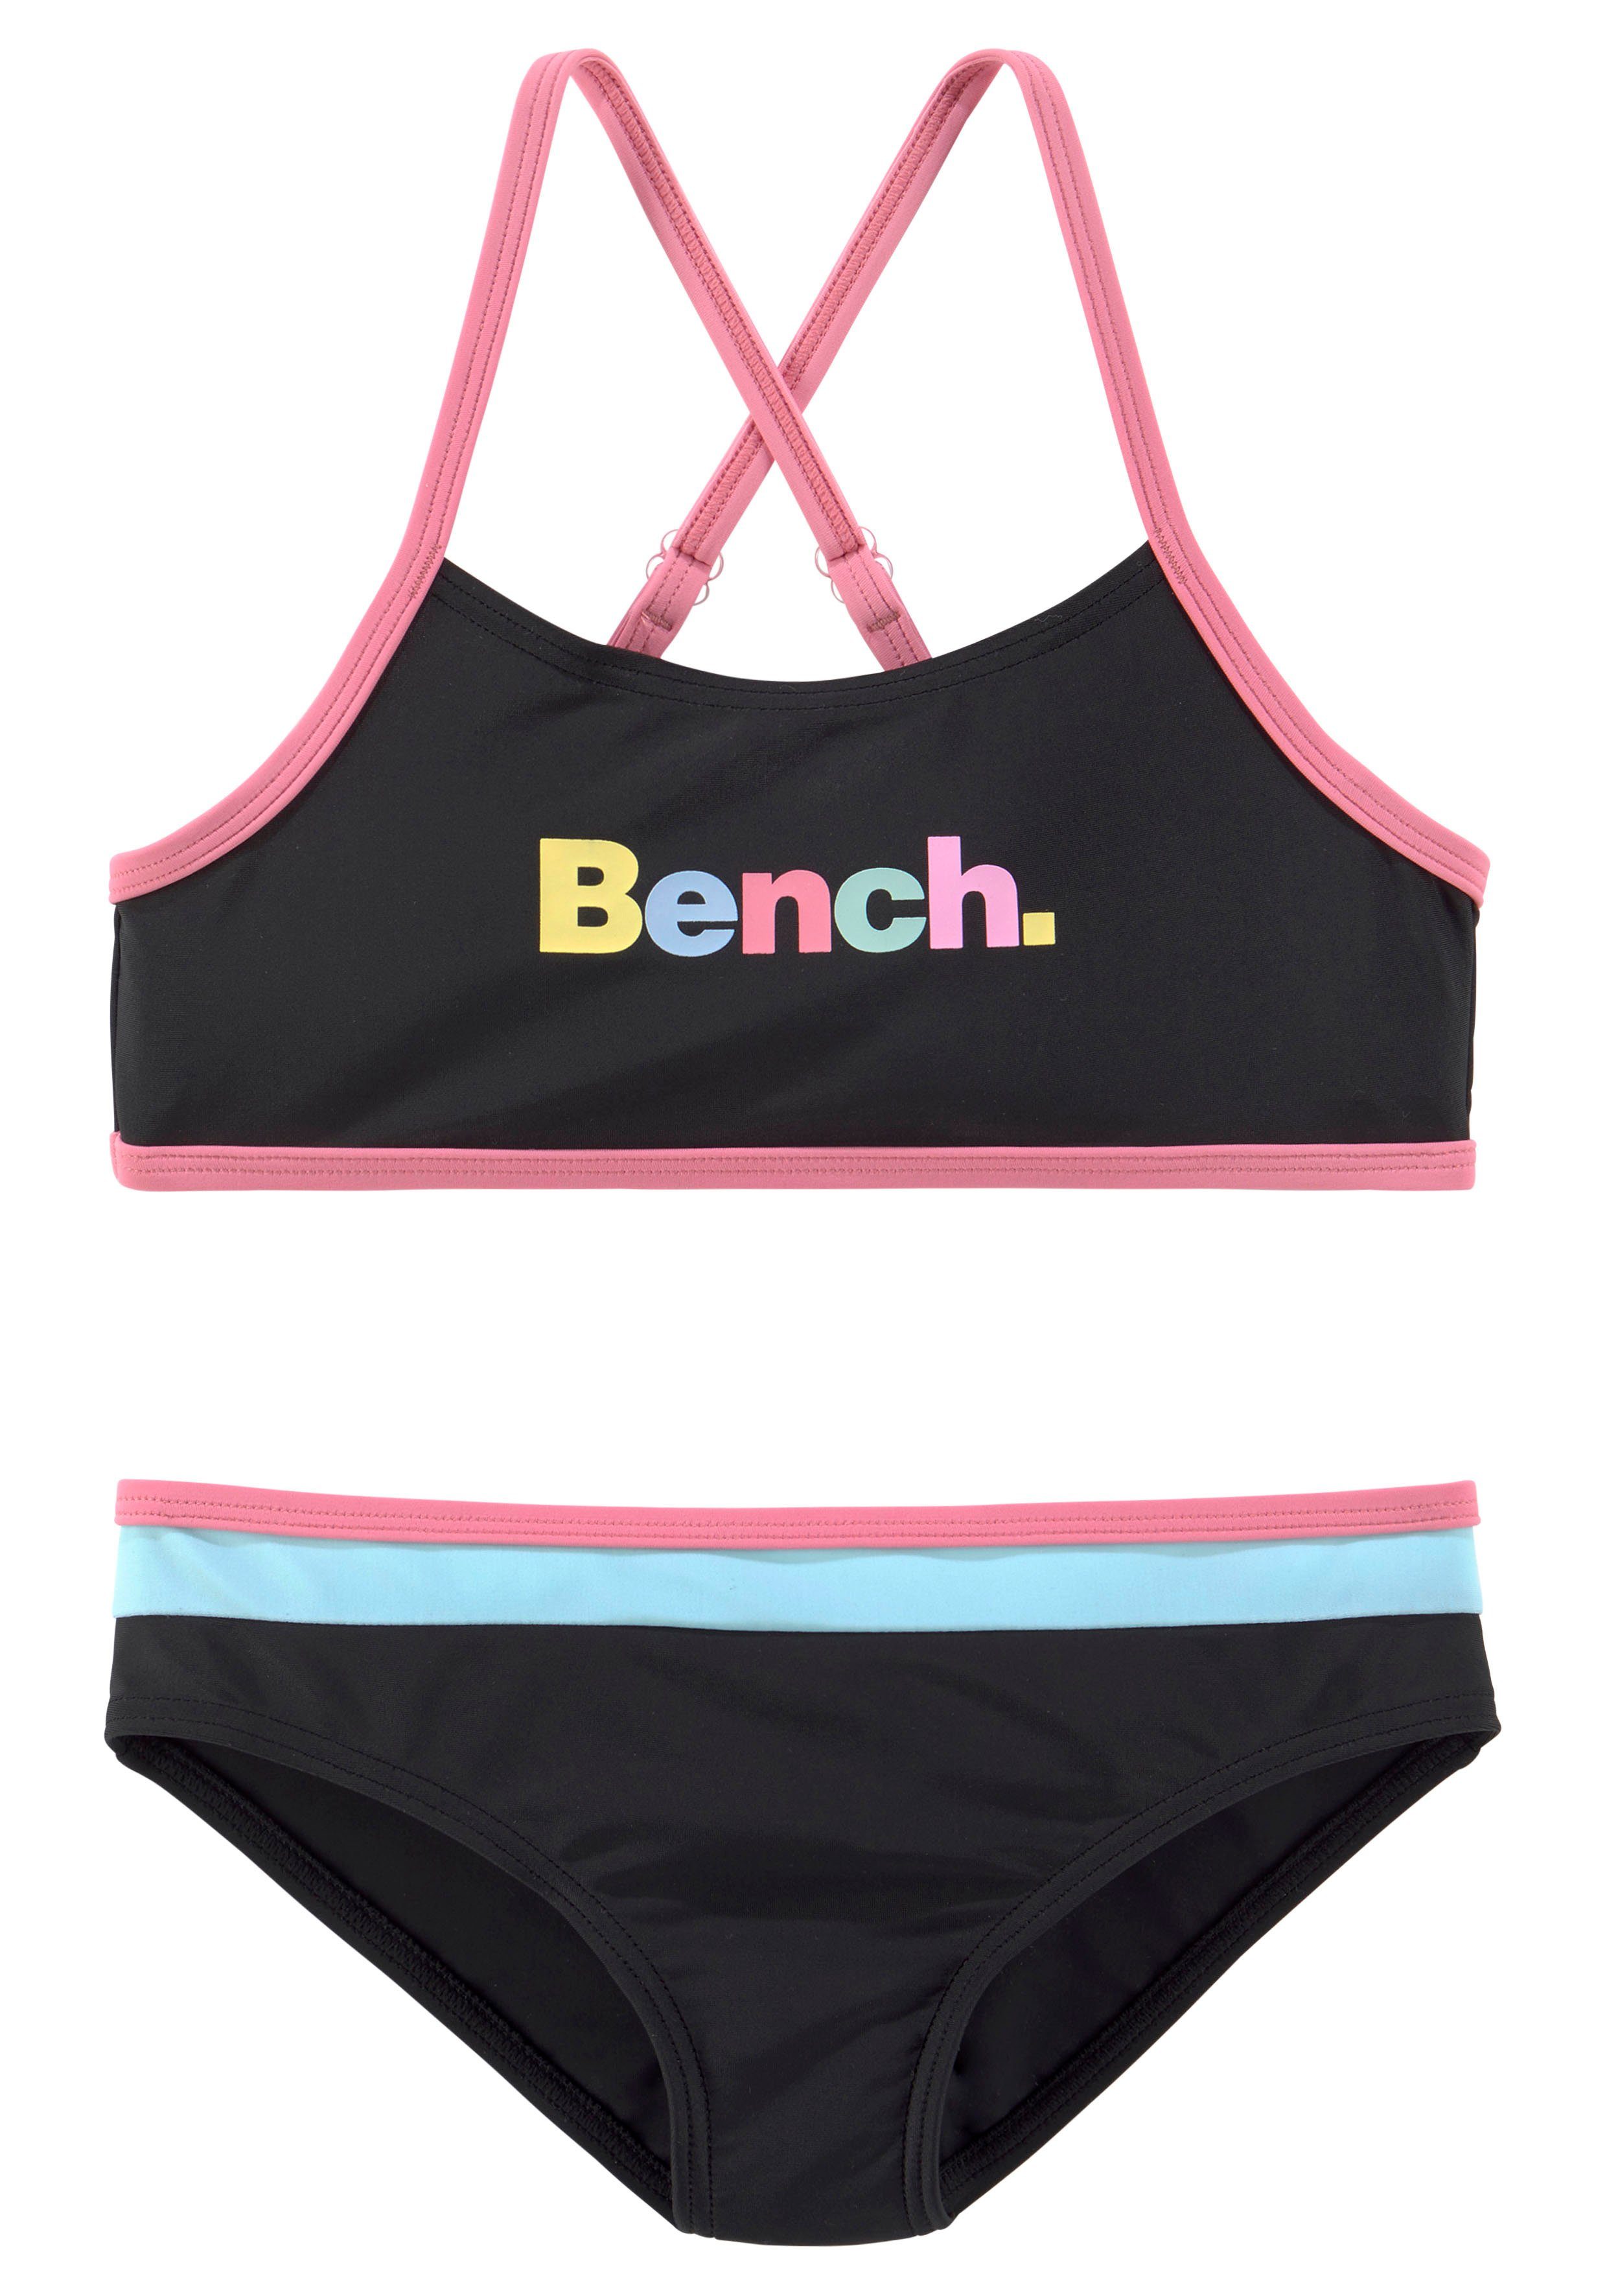 Bench. Bustier-Bikini mit bunten Details